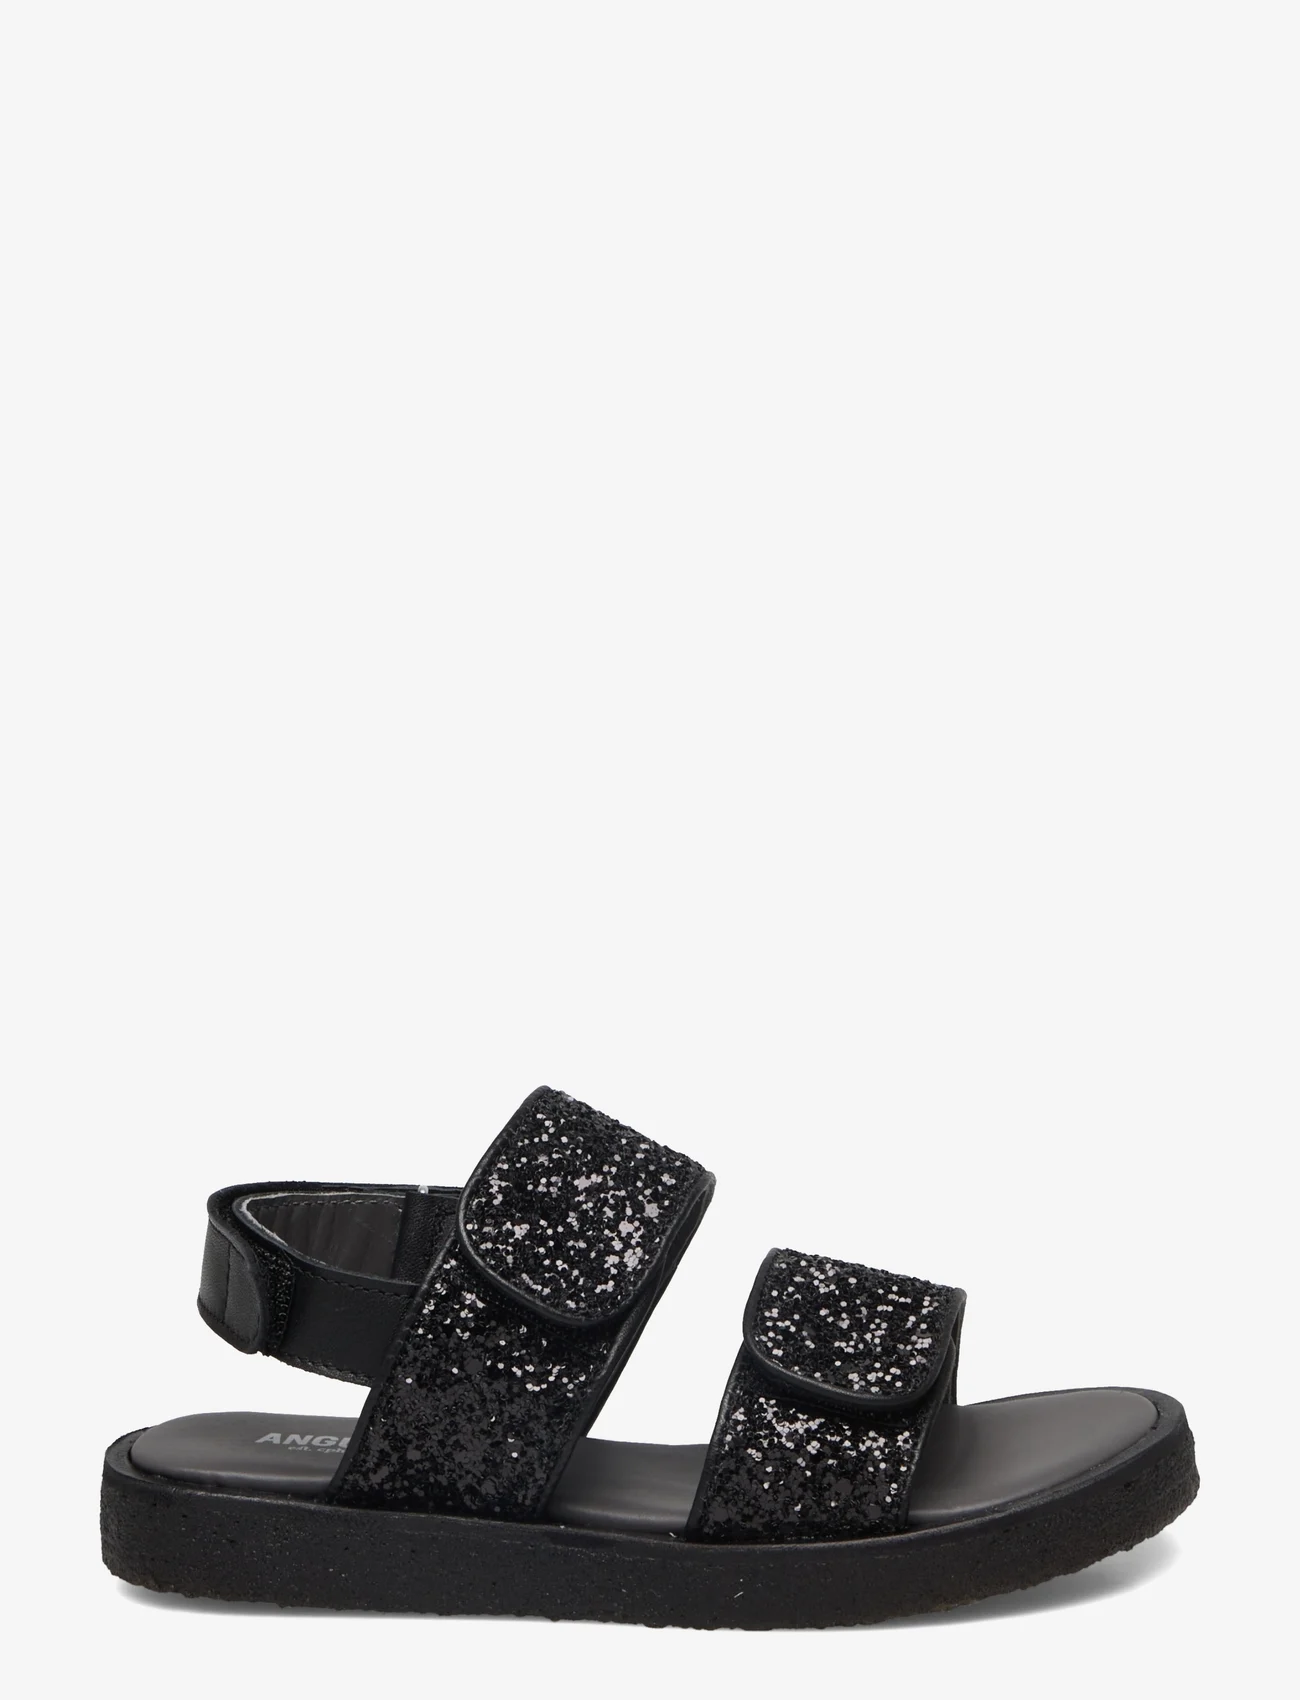 ANGULUS - Sandals - flat - open toe - op - kesälöytöjä - 1604/2486 black/black glitter - 1